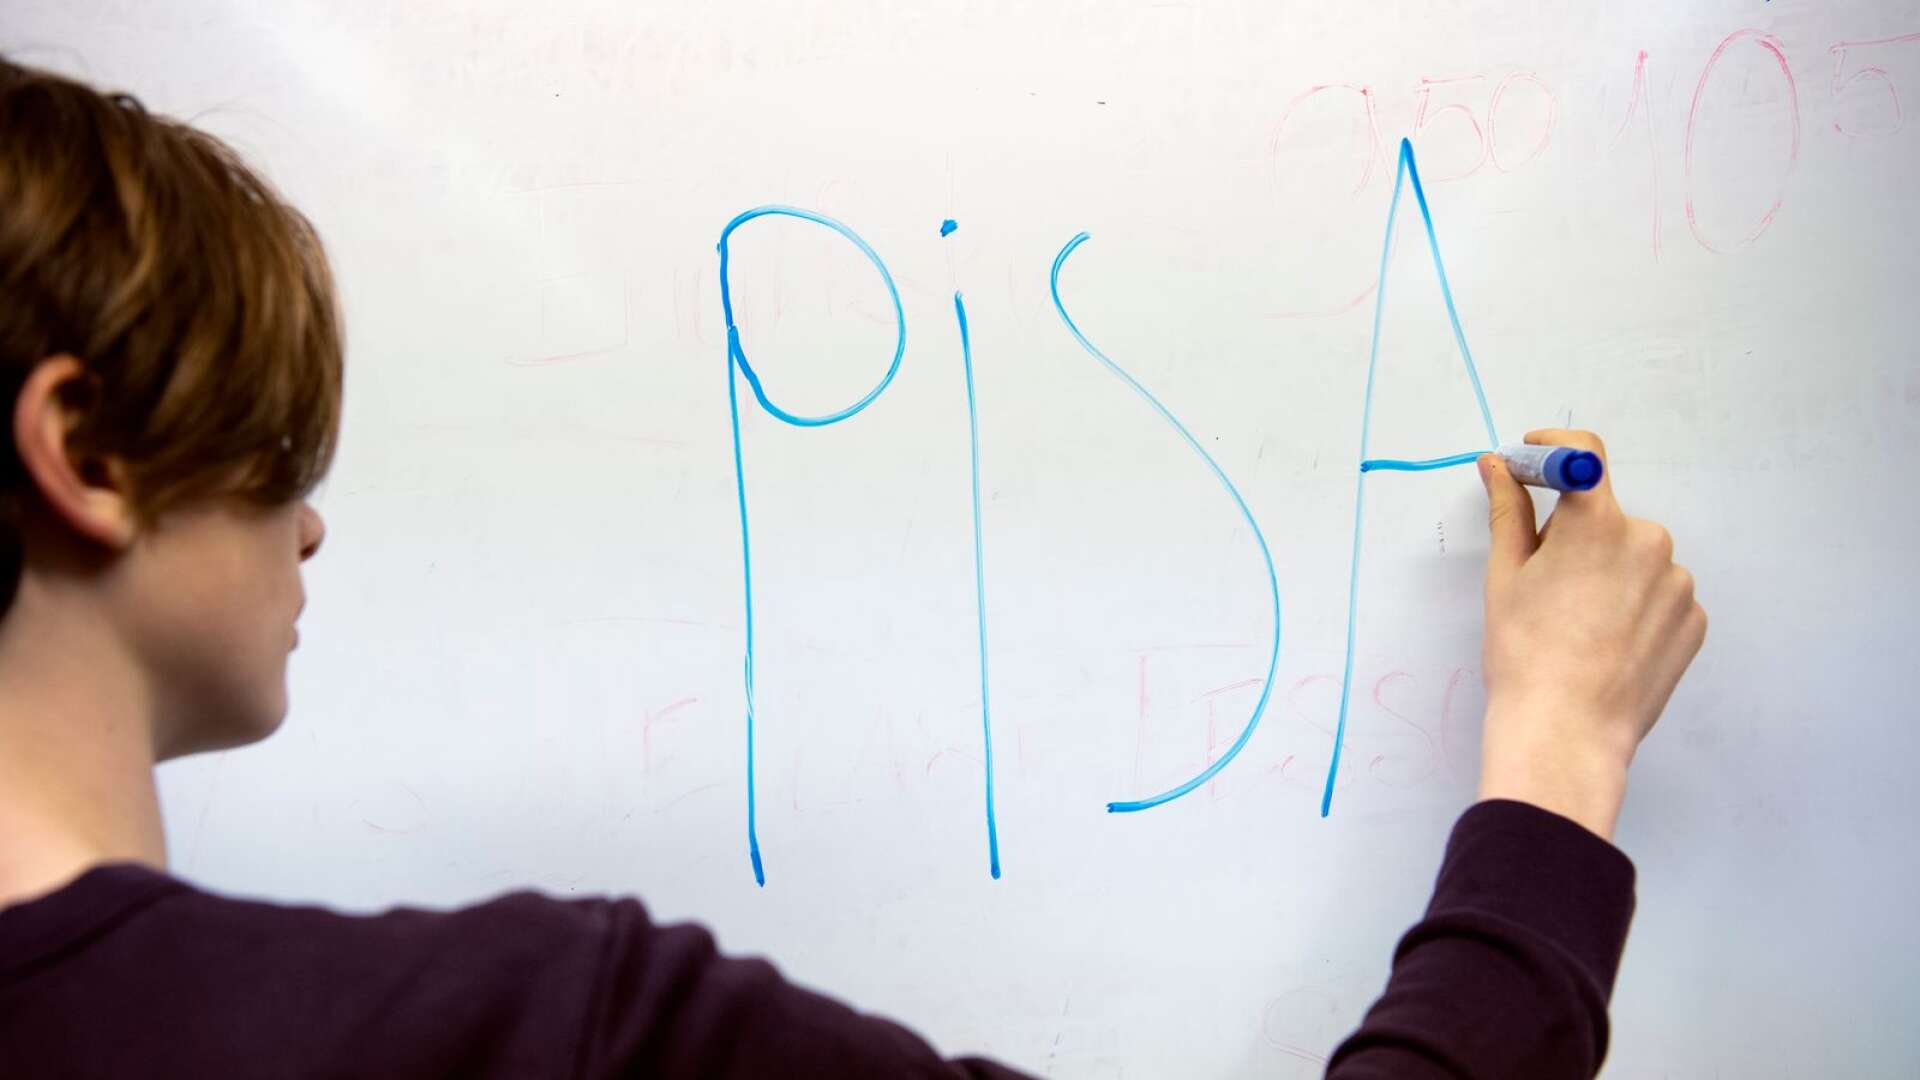 Pisa säger inget om vilja och ansträngning och inte heller om kommunalisering, friskolor, få sökande till lärarutbildningen, dokumentationströtthet hos lärare, hot mot lärare eller lärare som anmäls till Skolinspektionen, skriver Inger Enkvist.